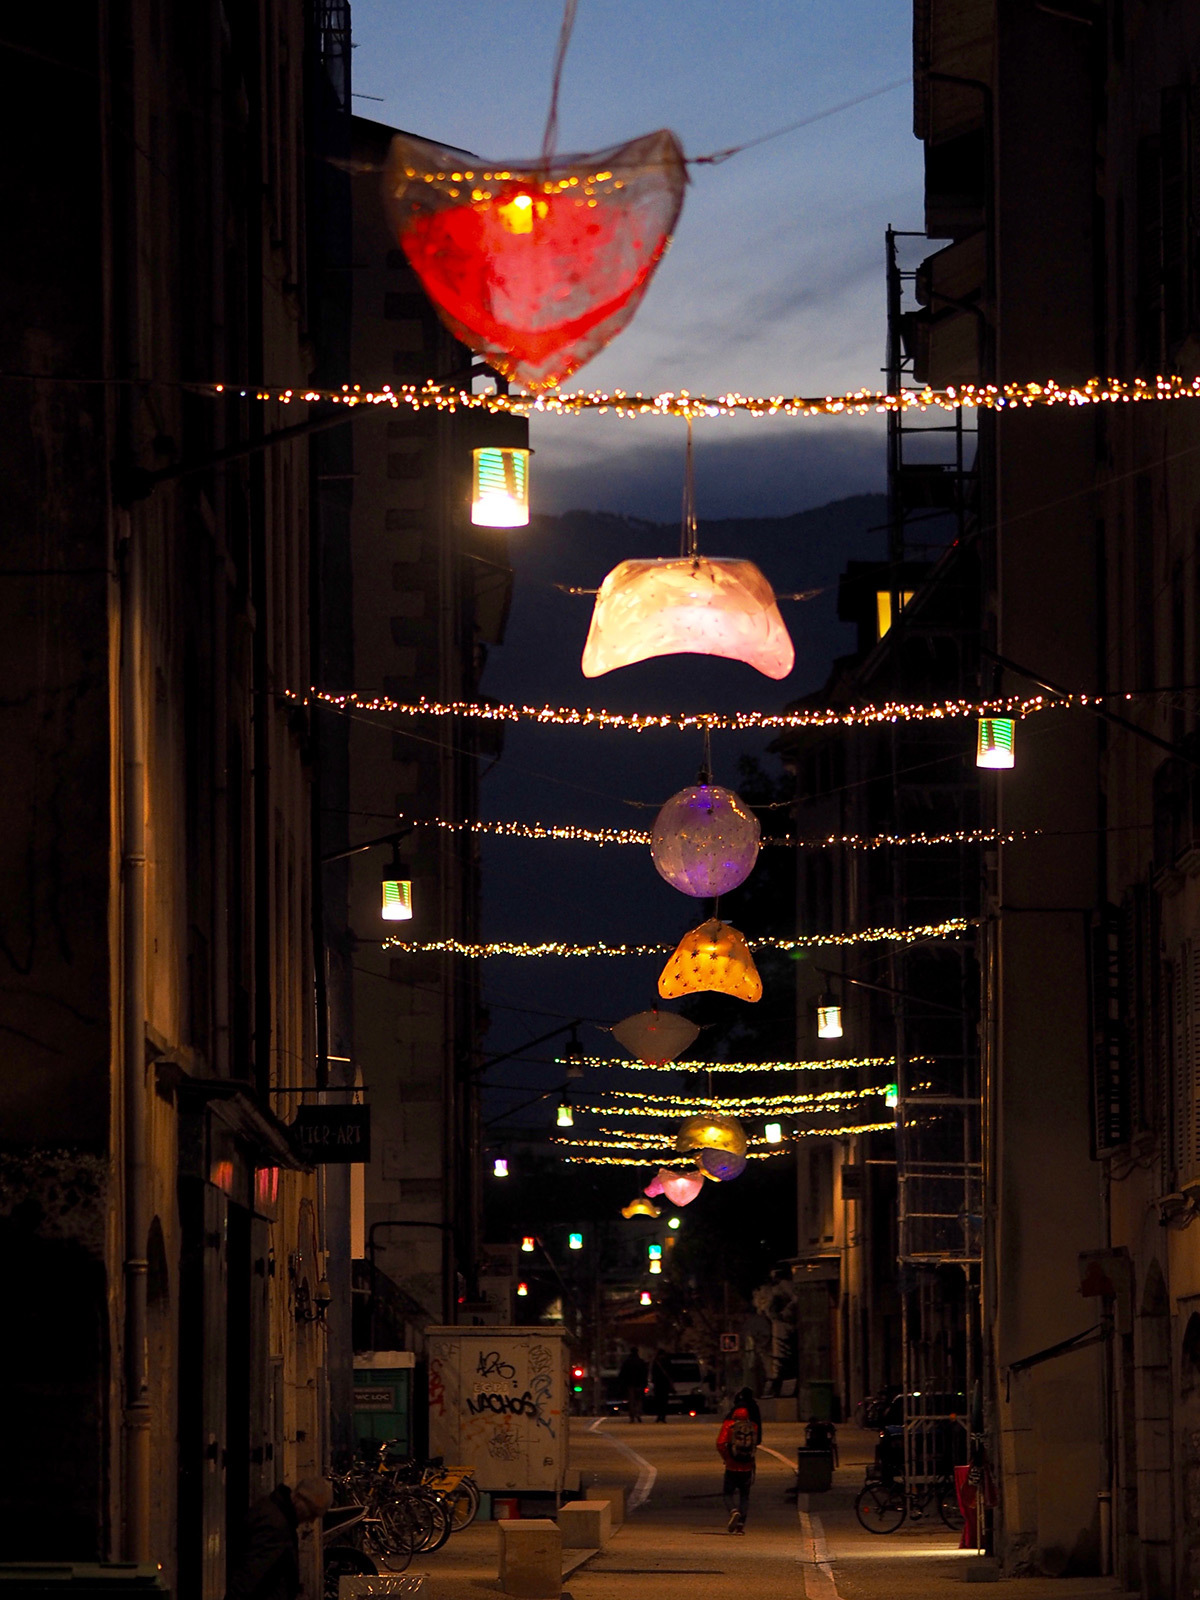 Les CoCColithes de la rue Saint-Laurent, Grenoble - Collectif Abat-Jour - Decembre 2015 © Anastasia Sokolnikova et Jean-David Boucher